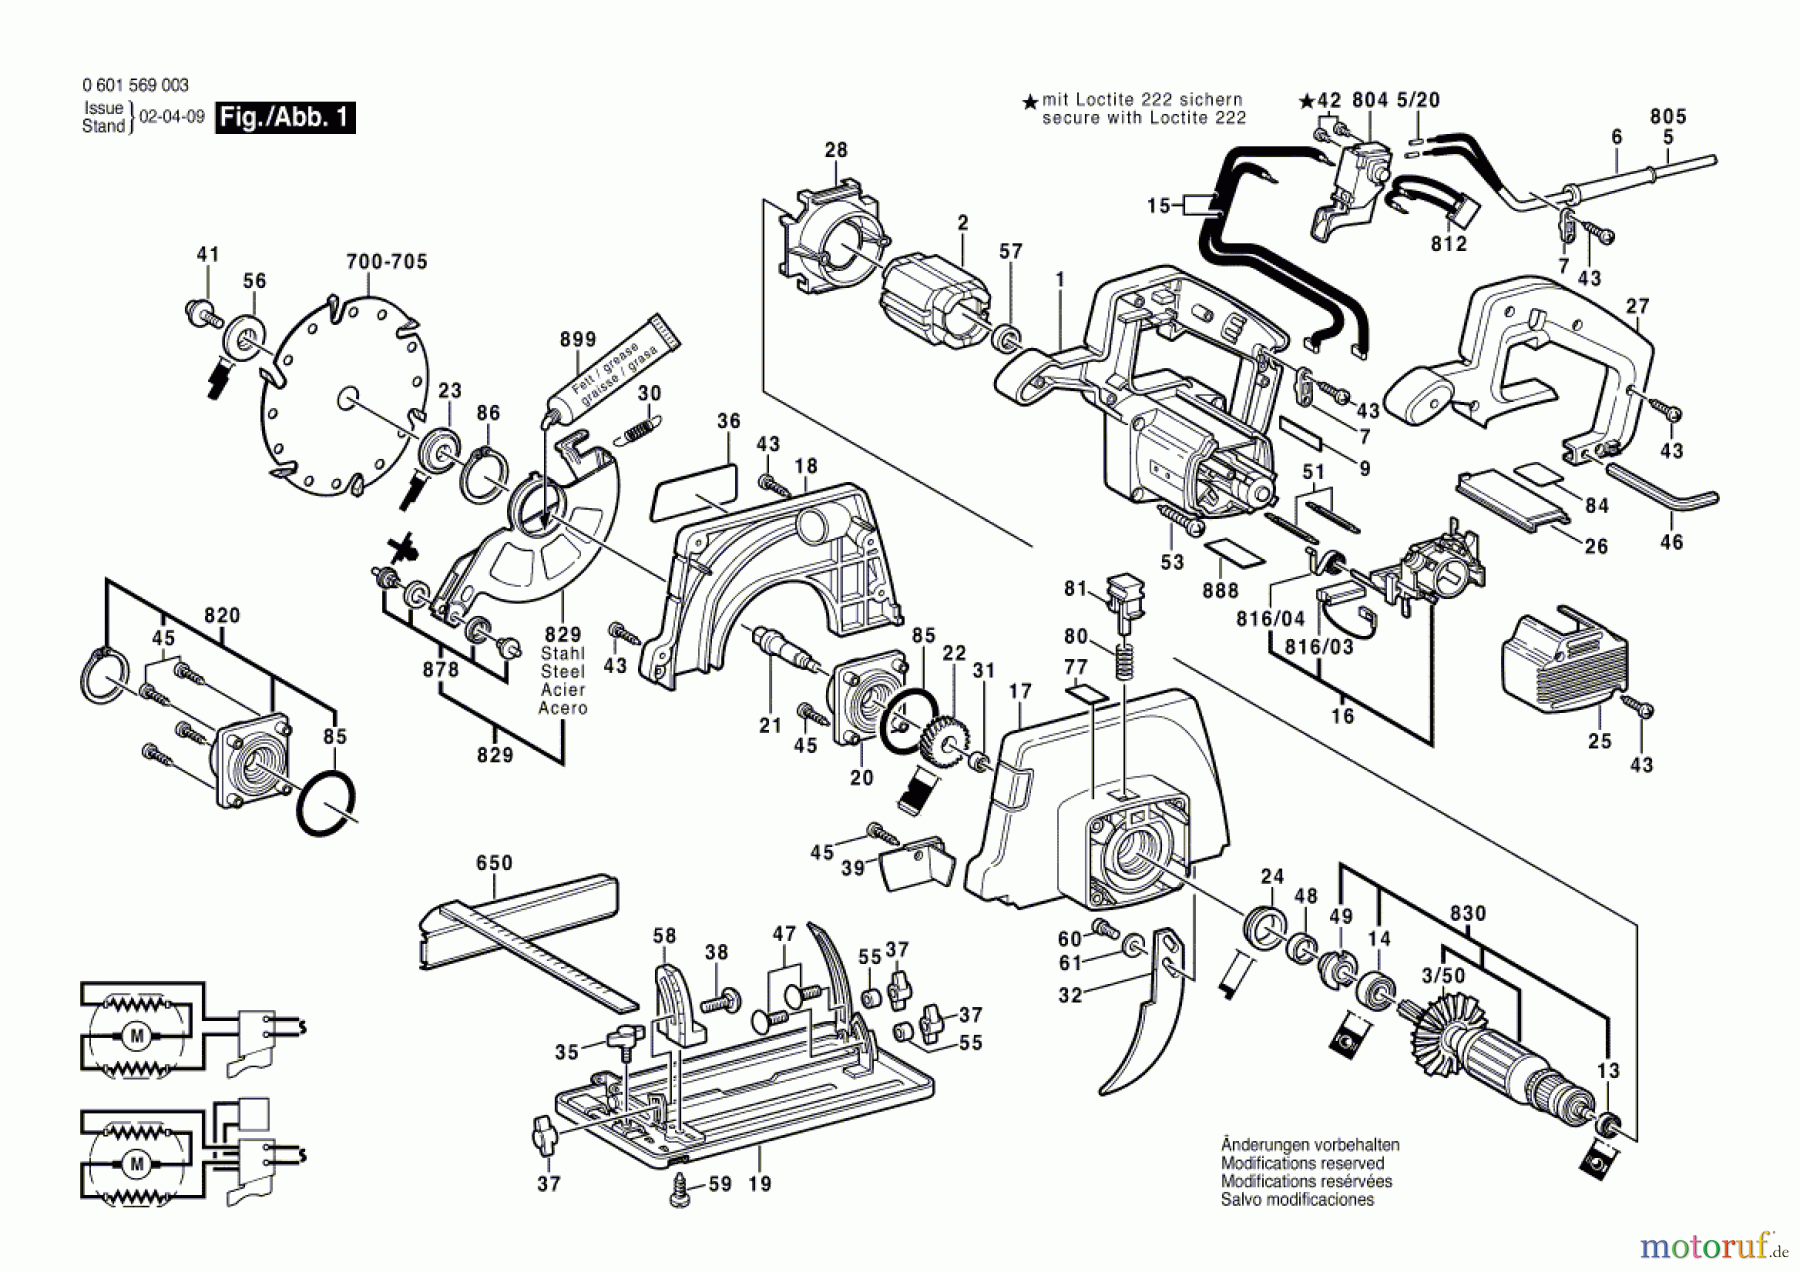  Bosch Werkzeug Handkreissäge GKS 54 Seite 1